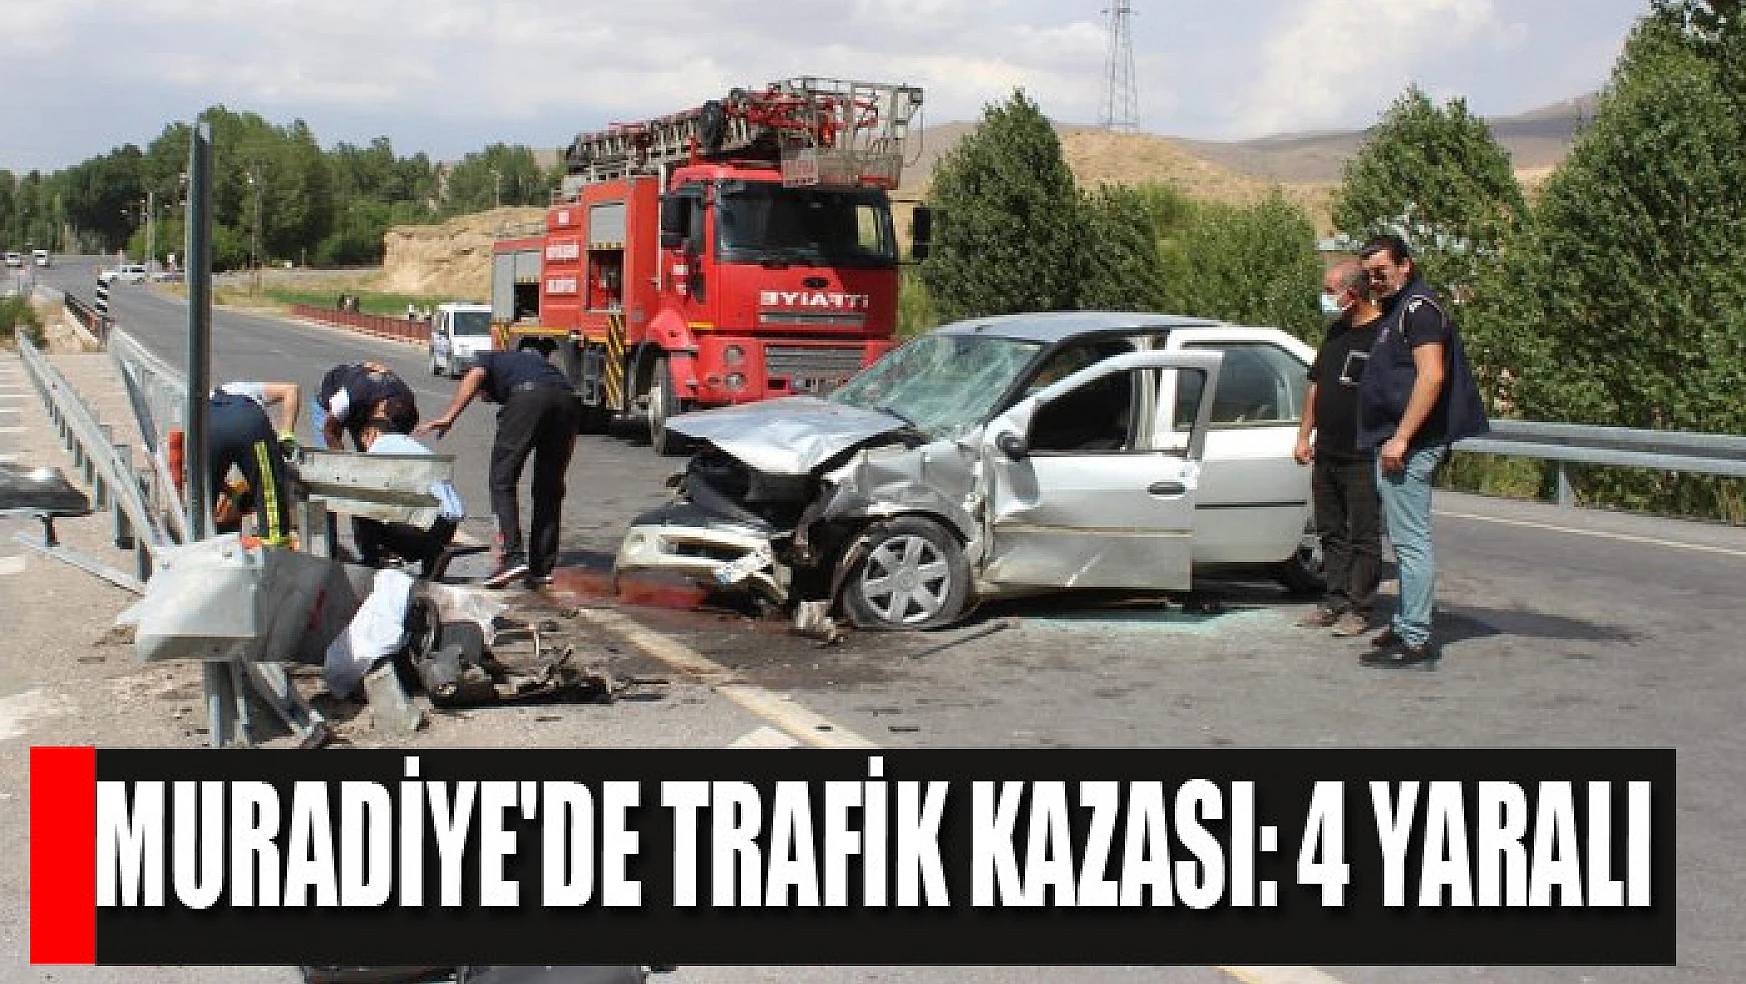 Muradiye'de trafik kazası: 4 yaralı